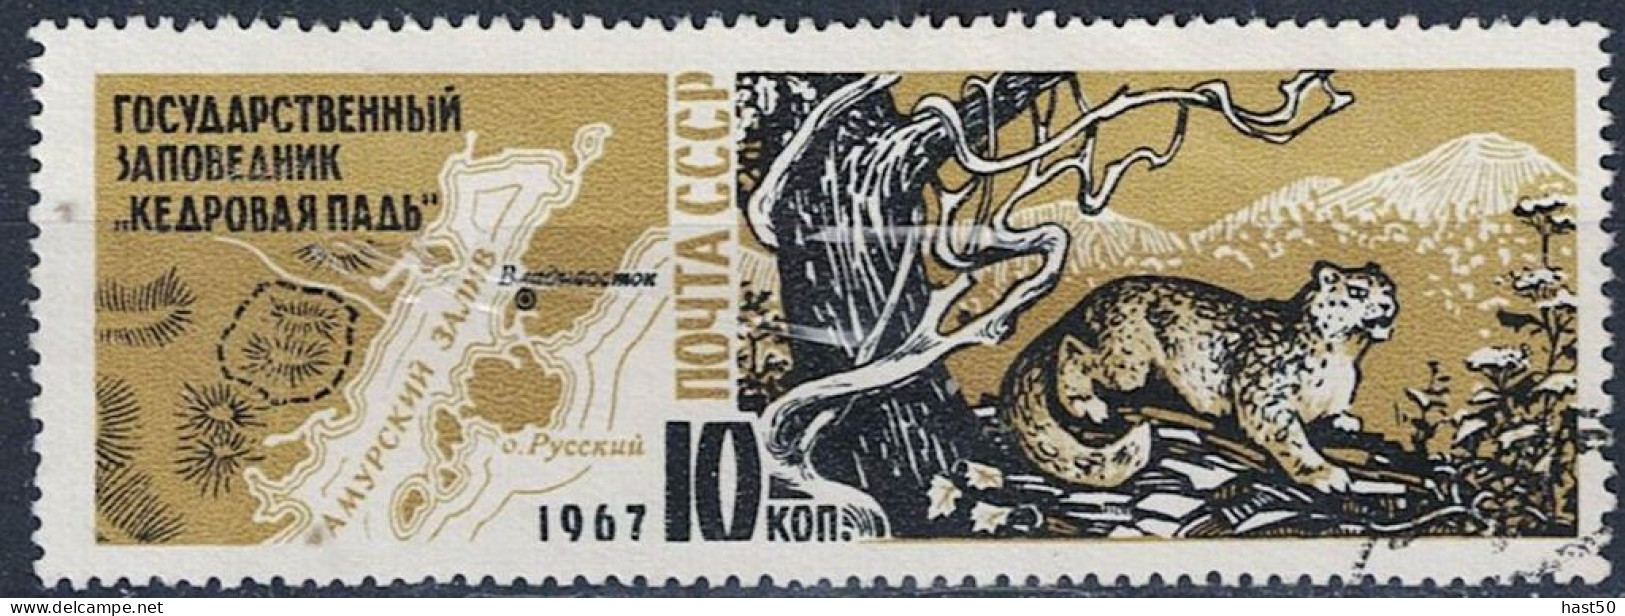 Sowjetunion UdSSR - Schneeleopard (Panthera Uncia) Vor Gebirgslandschaft (MiNr. 3400) 1967 - Gest Used Obl - Oblitérés